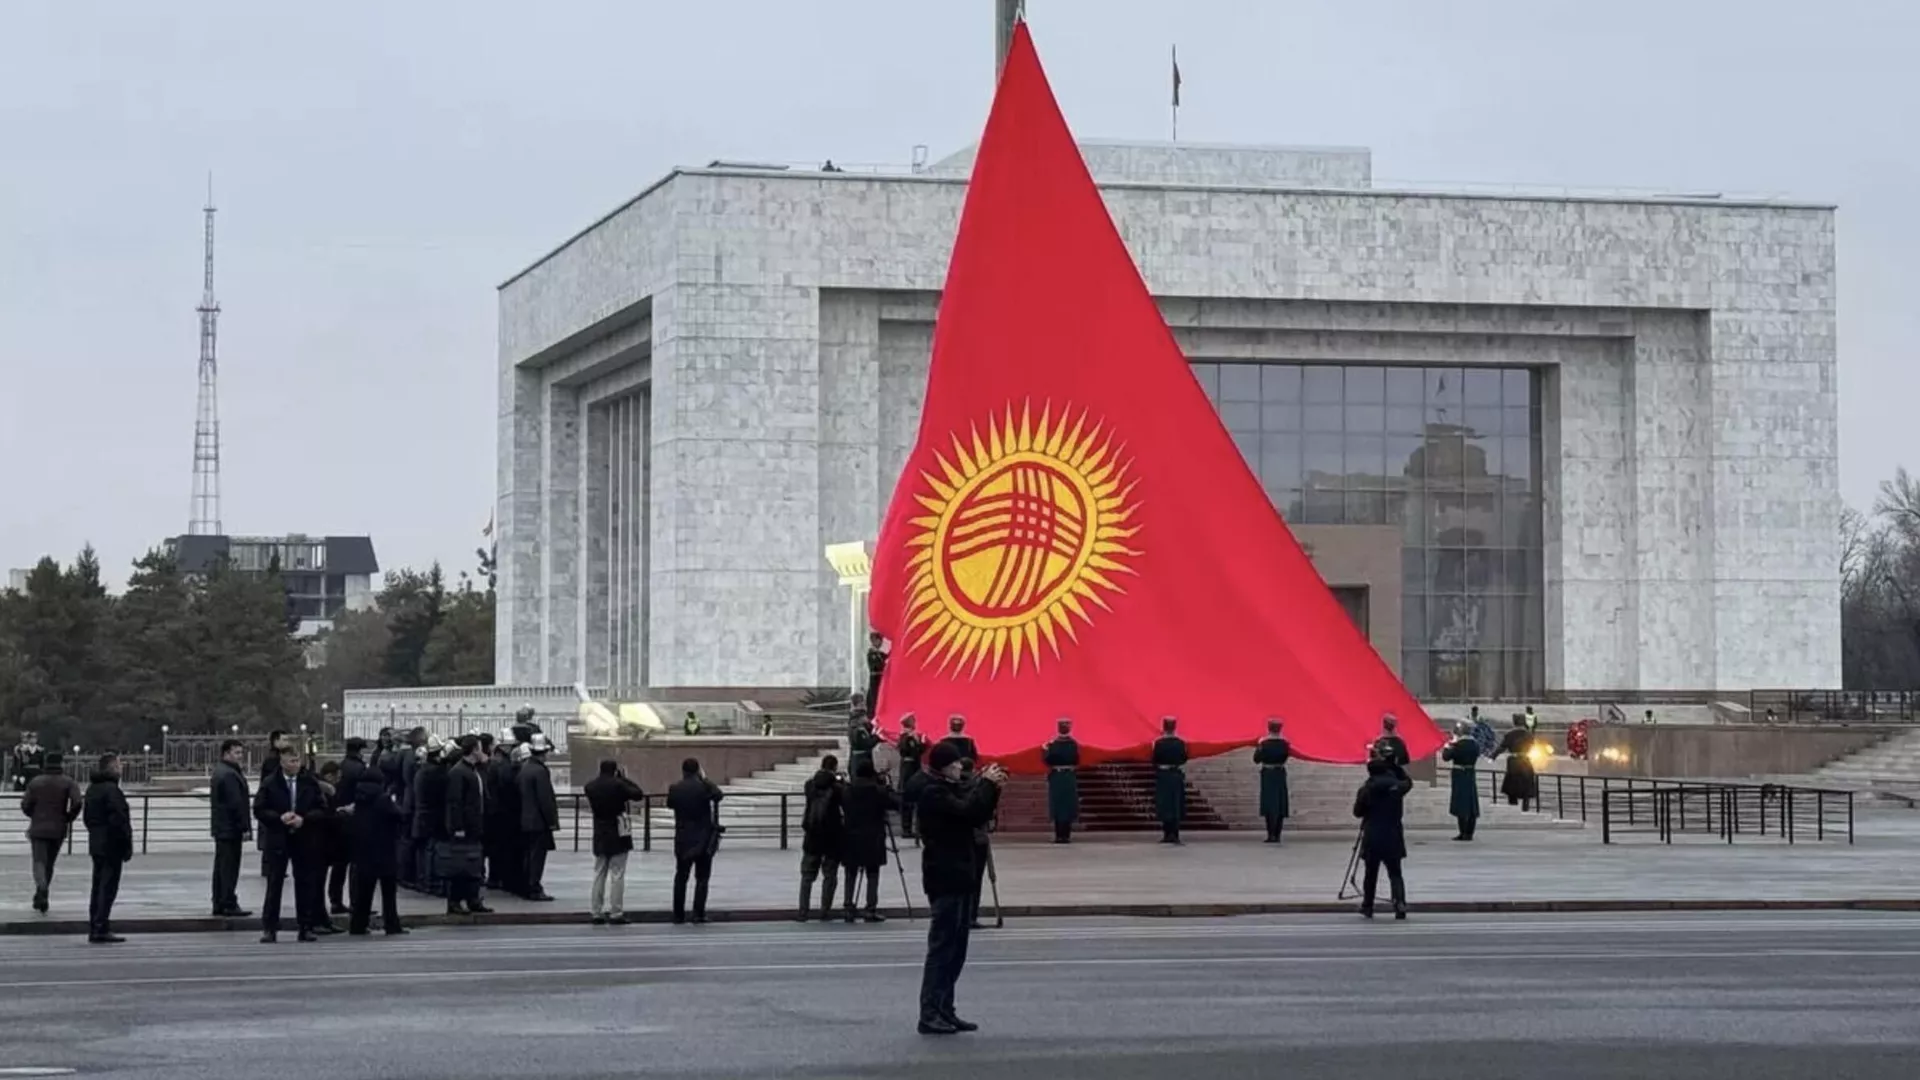 В Киргизии предотвратили попытку насильственного захвата власти